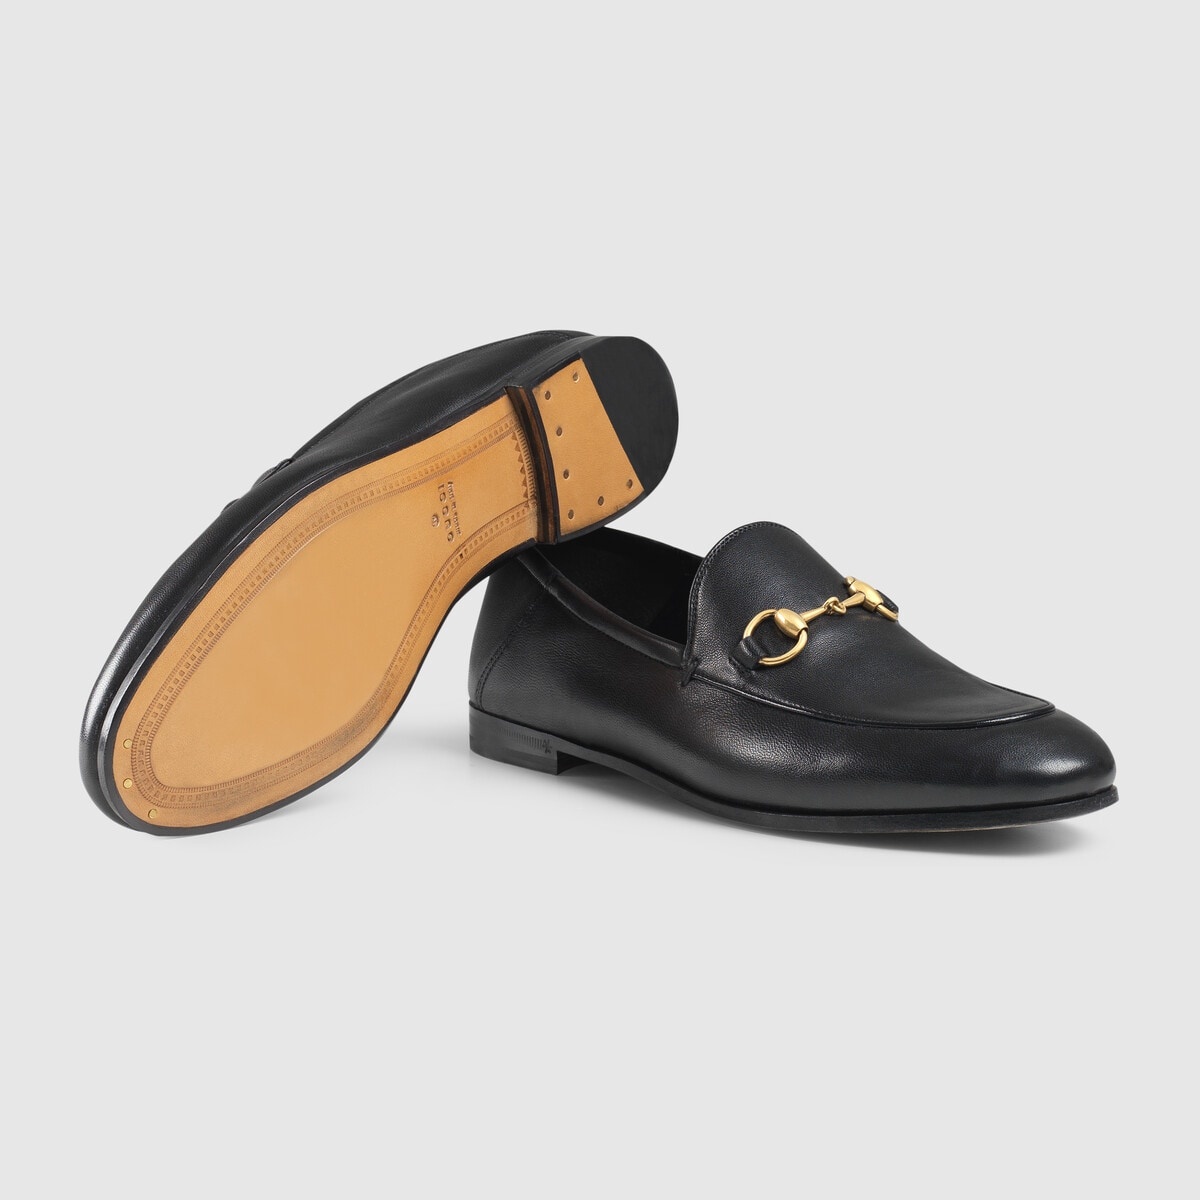 Women's leather Horsebit loafer - 5